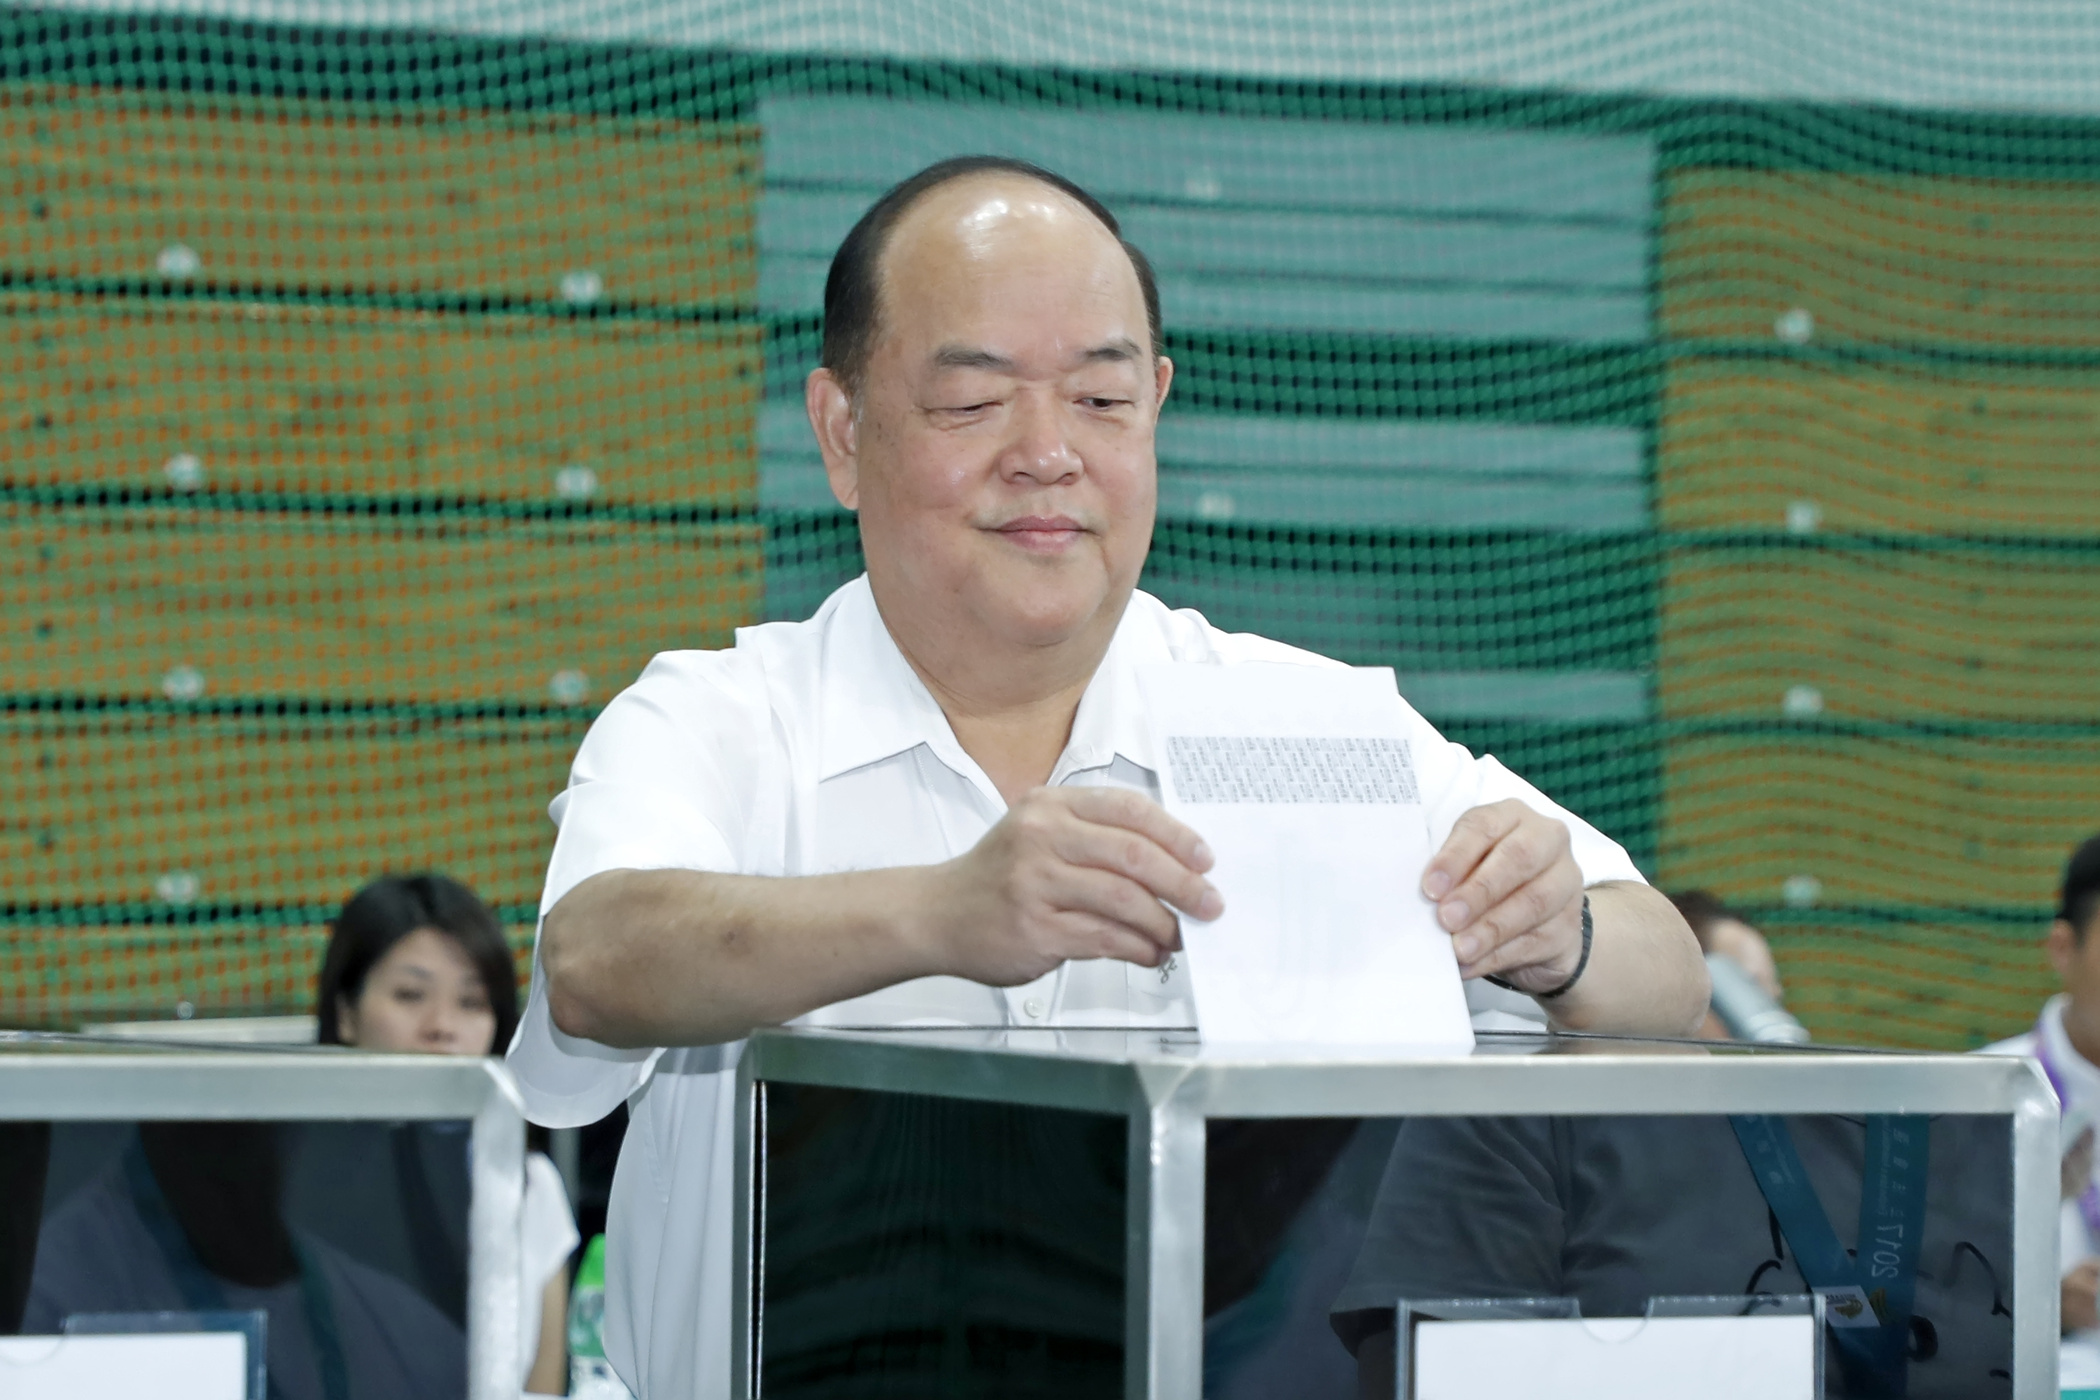 Cinzento e pró-Pequim, o candidato Ho Iat Seng que quer governar Macau